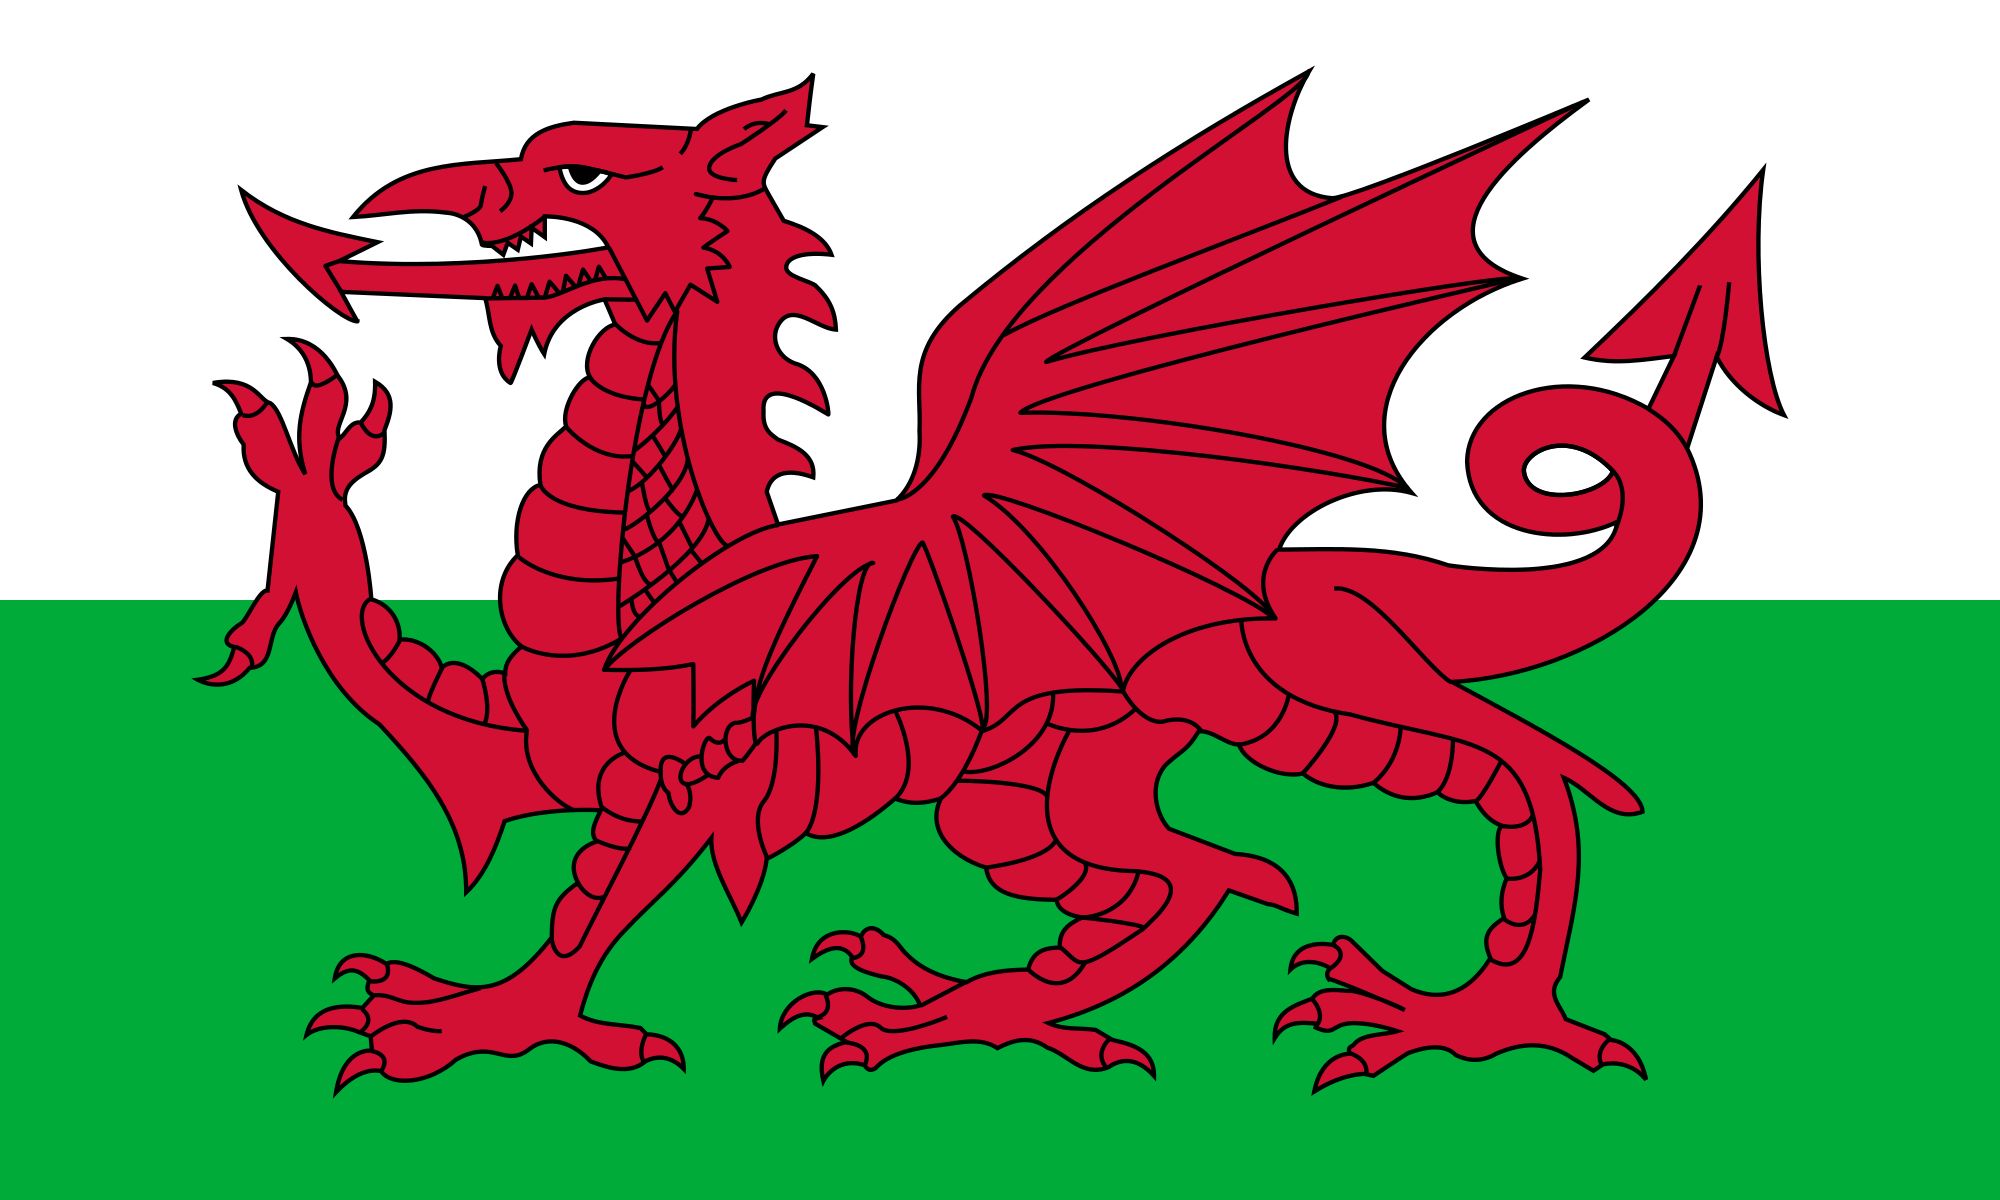 웨일즈 국가(Wales National Anthem)